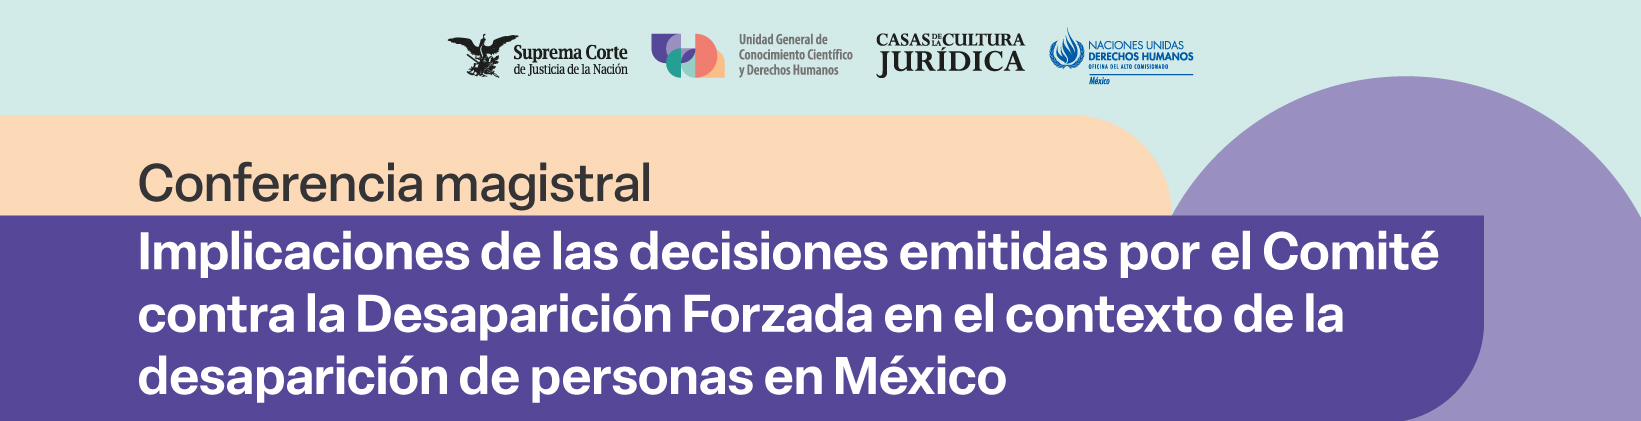 Banner Conferencia magistral Implicaciones de las decisiones emitidas por el Comité contra la Desaparición Forzada en el contexto de la desaparición forzada de personas en México